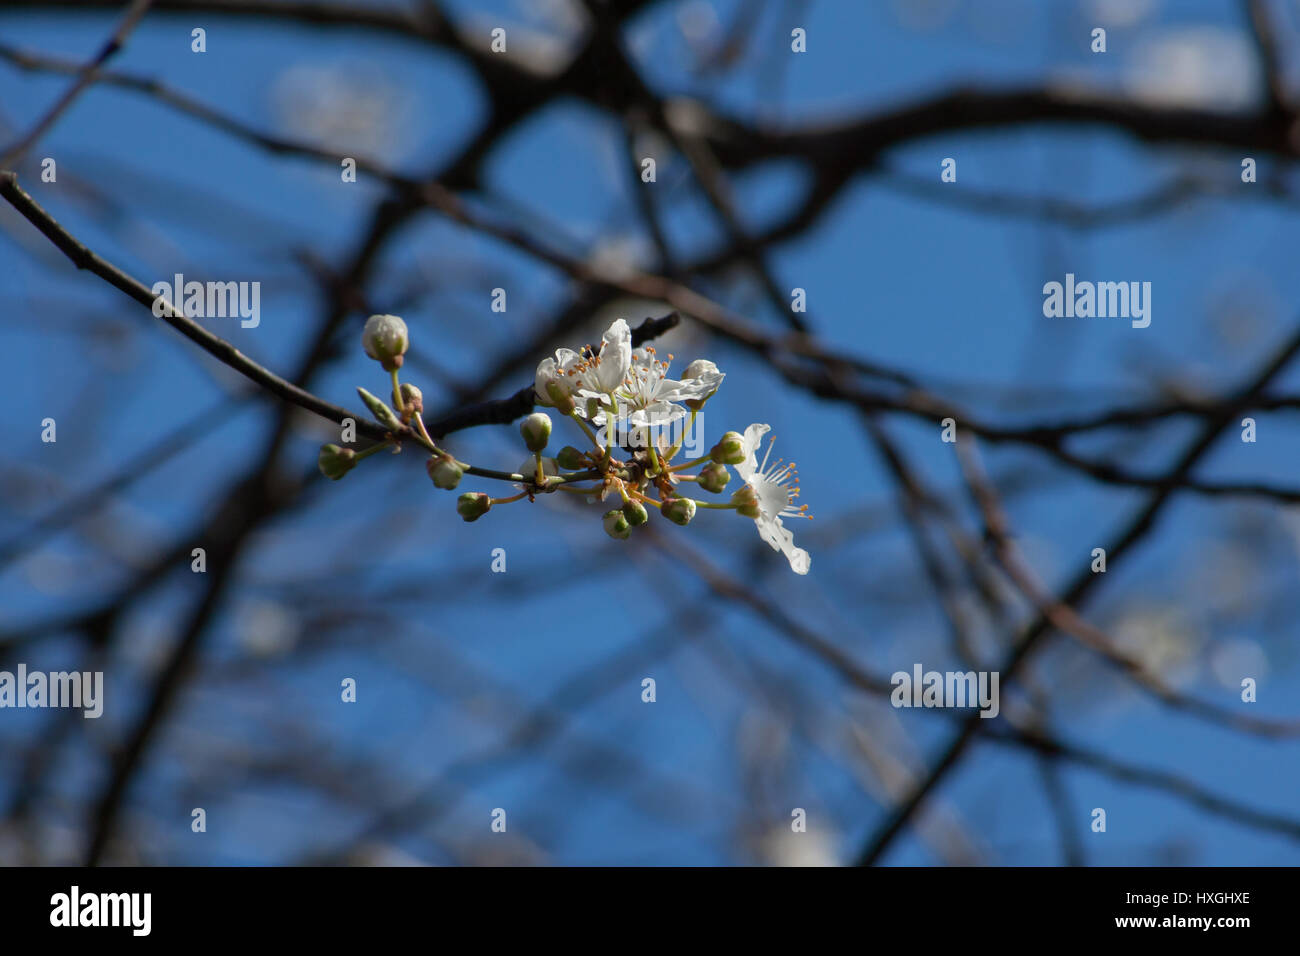 Impressioni dal parco pubblico in Berlin-Wilmersdorf. I fiori, le gemme al sole del mattino. Foto Stock